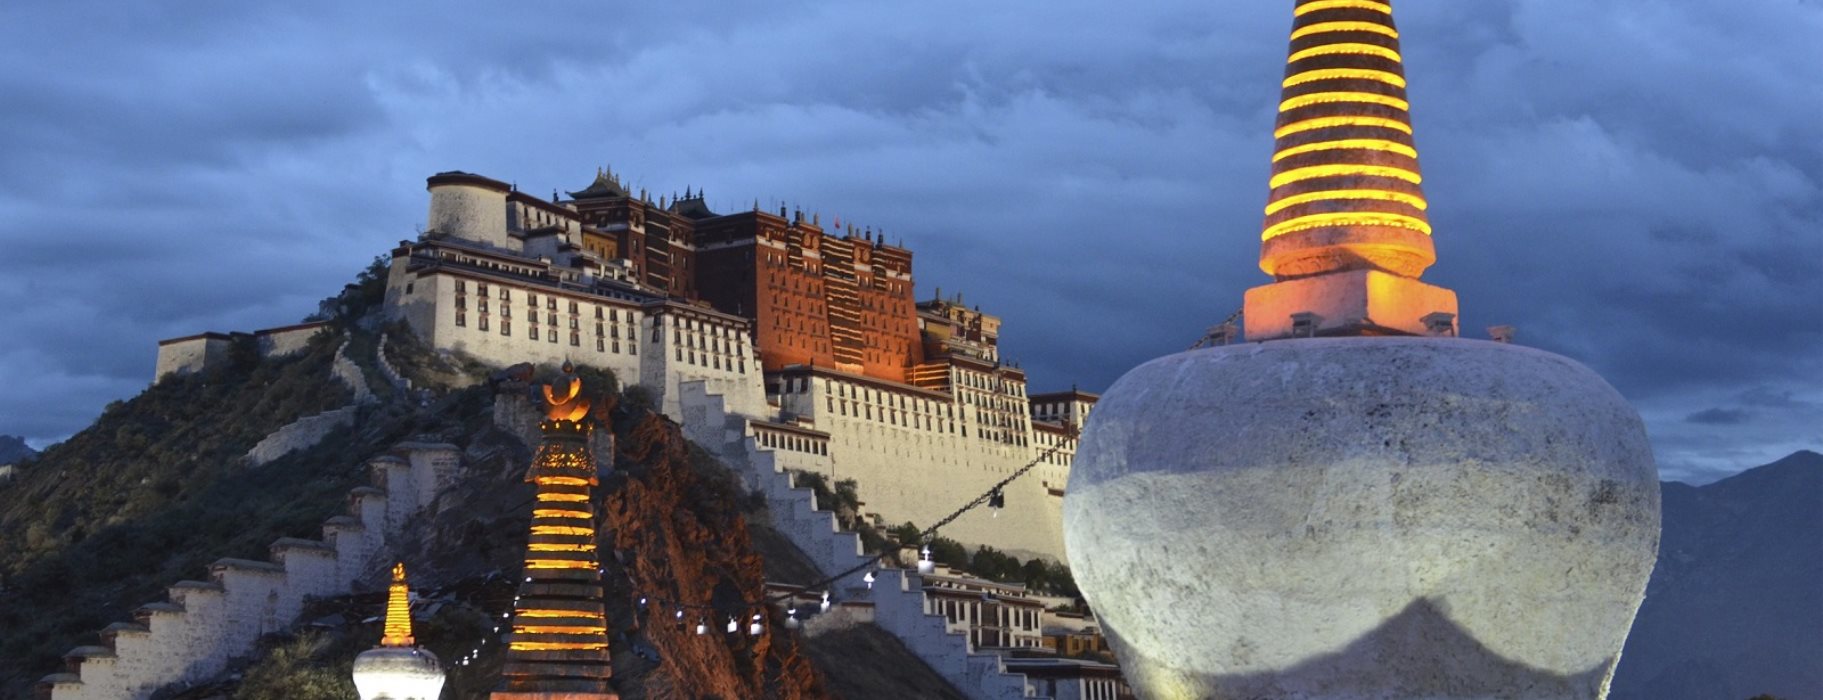 Συμβαίνει κάτι με την ενέργεια στο Θιβέτ;